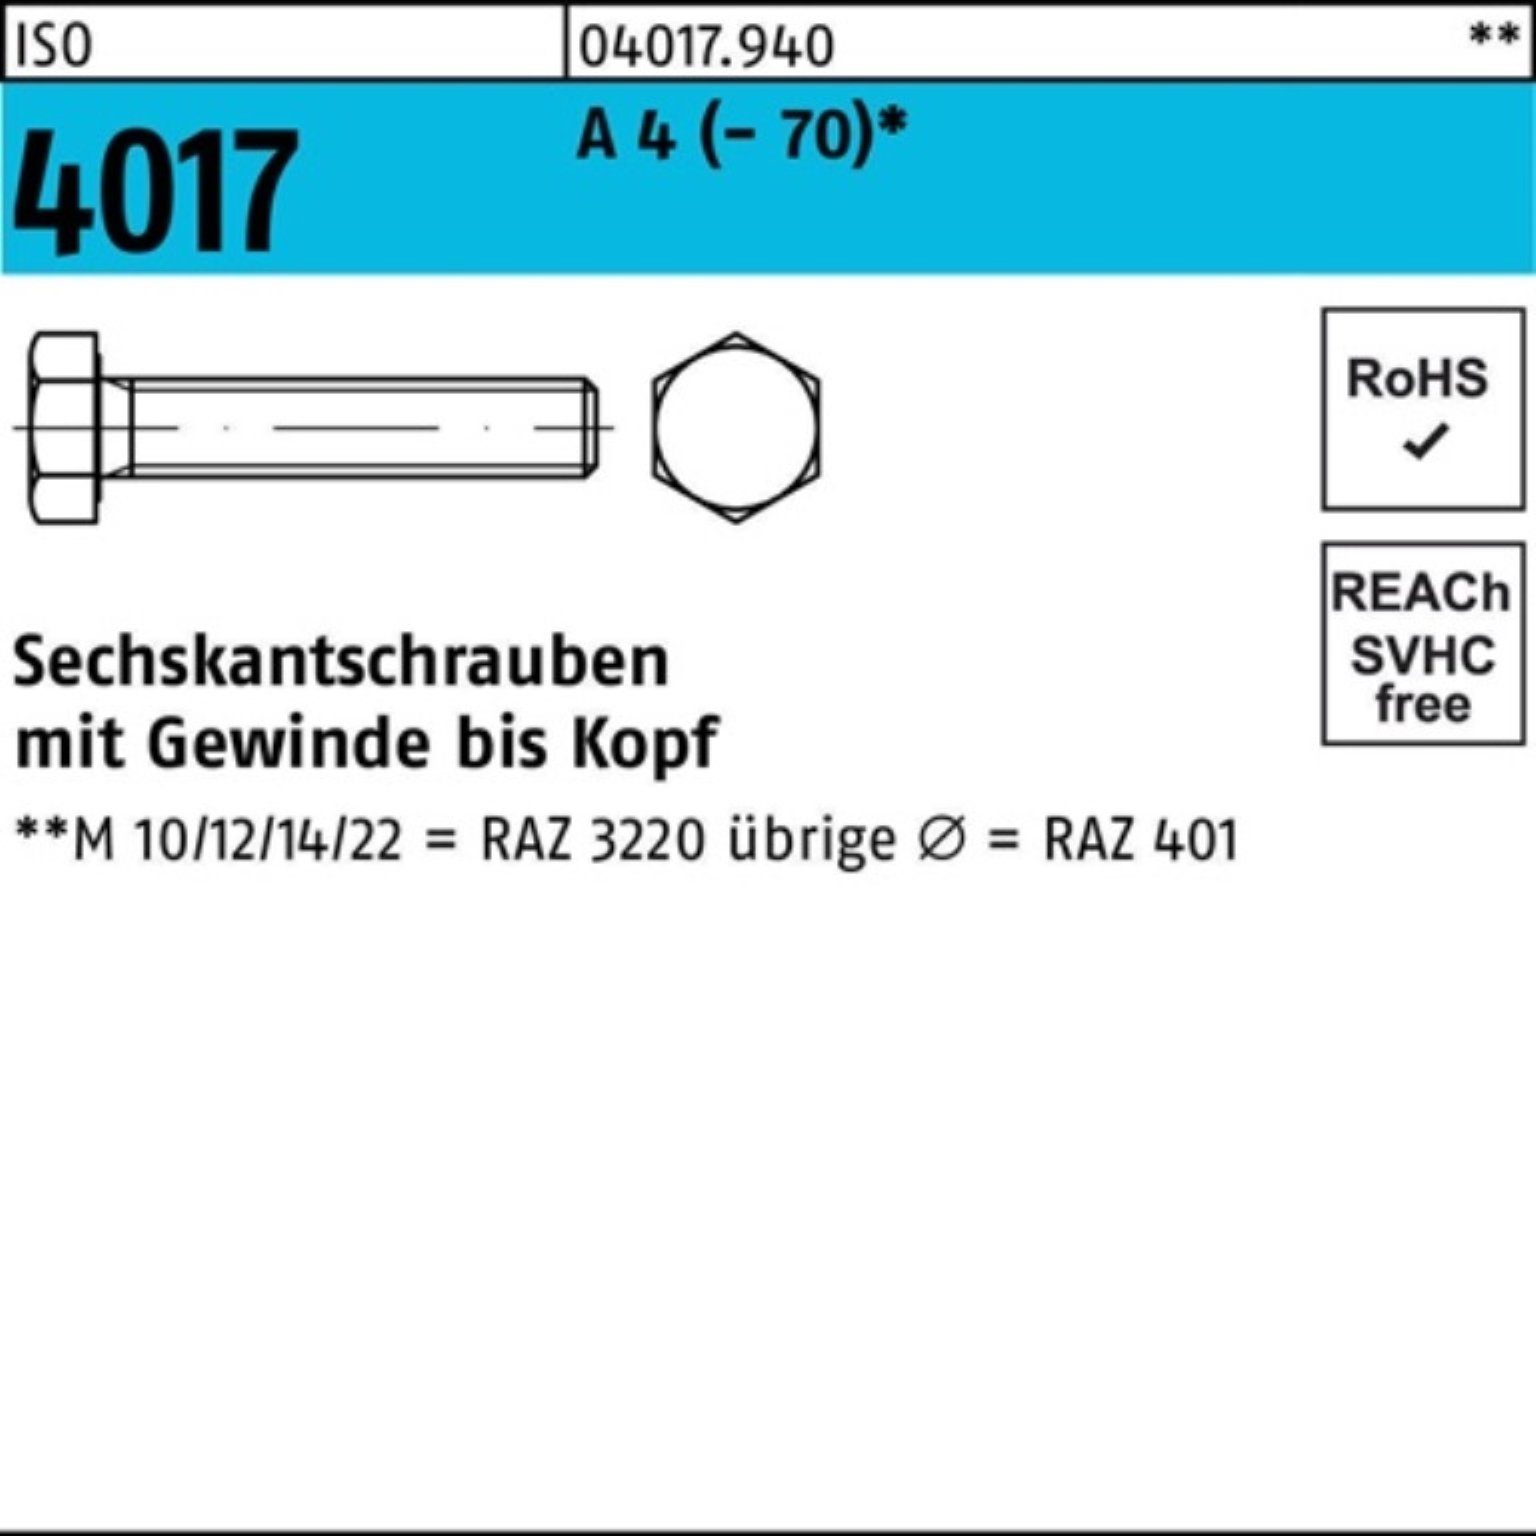 Sechskantschraube ISO Bufab M6x Pack (70) 200er 4017 200 22 A 4 Stück Sechskantschraube VG